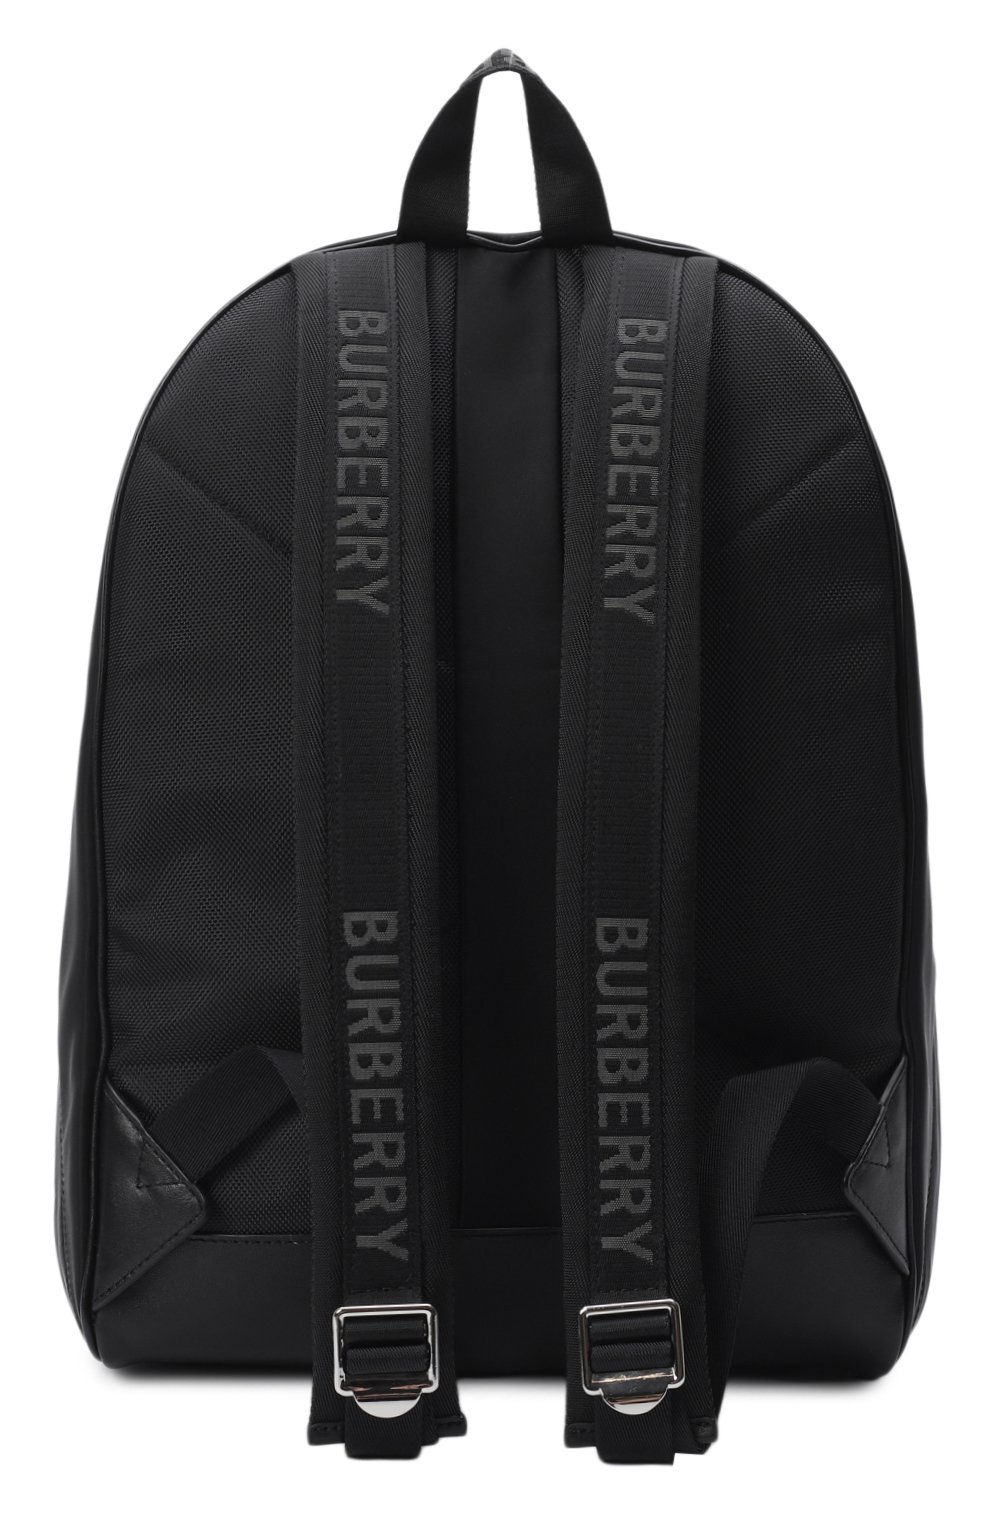 Рюкзак | Burberry | Чёрный - 2